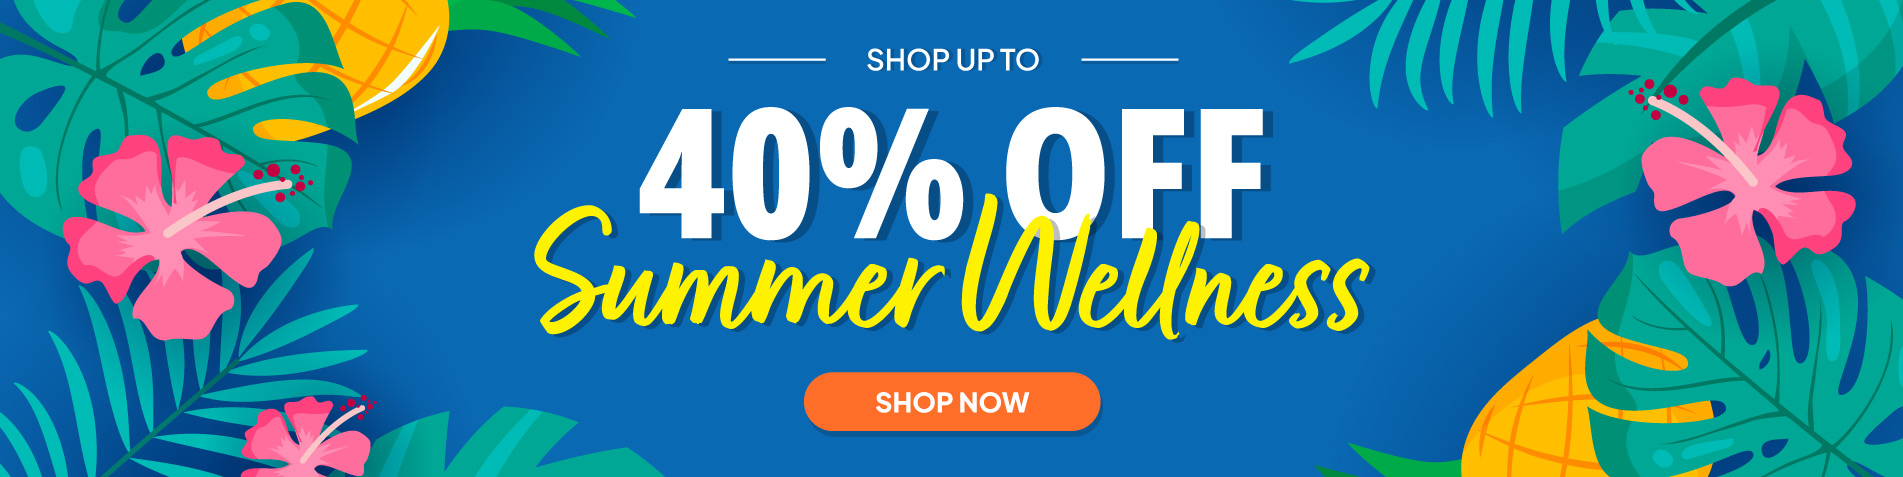 Shop up to 40% OFF - Summer Wellness